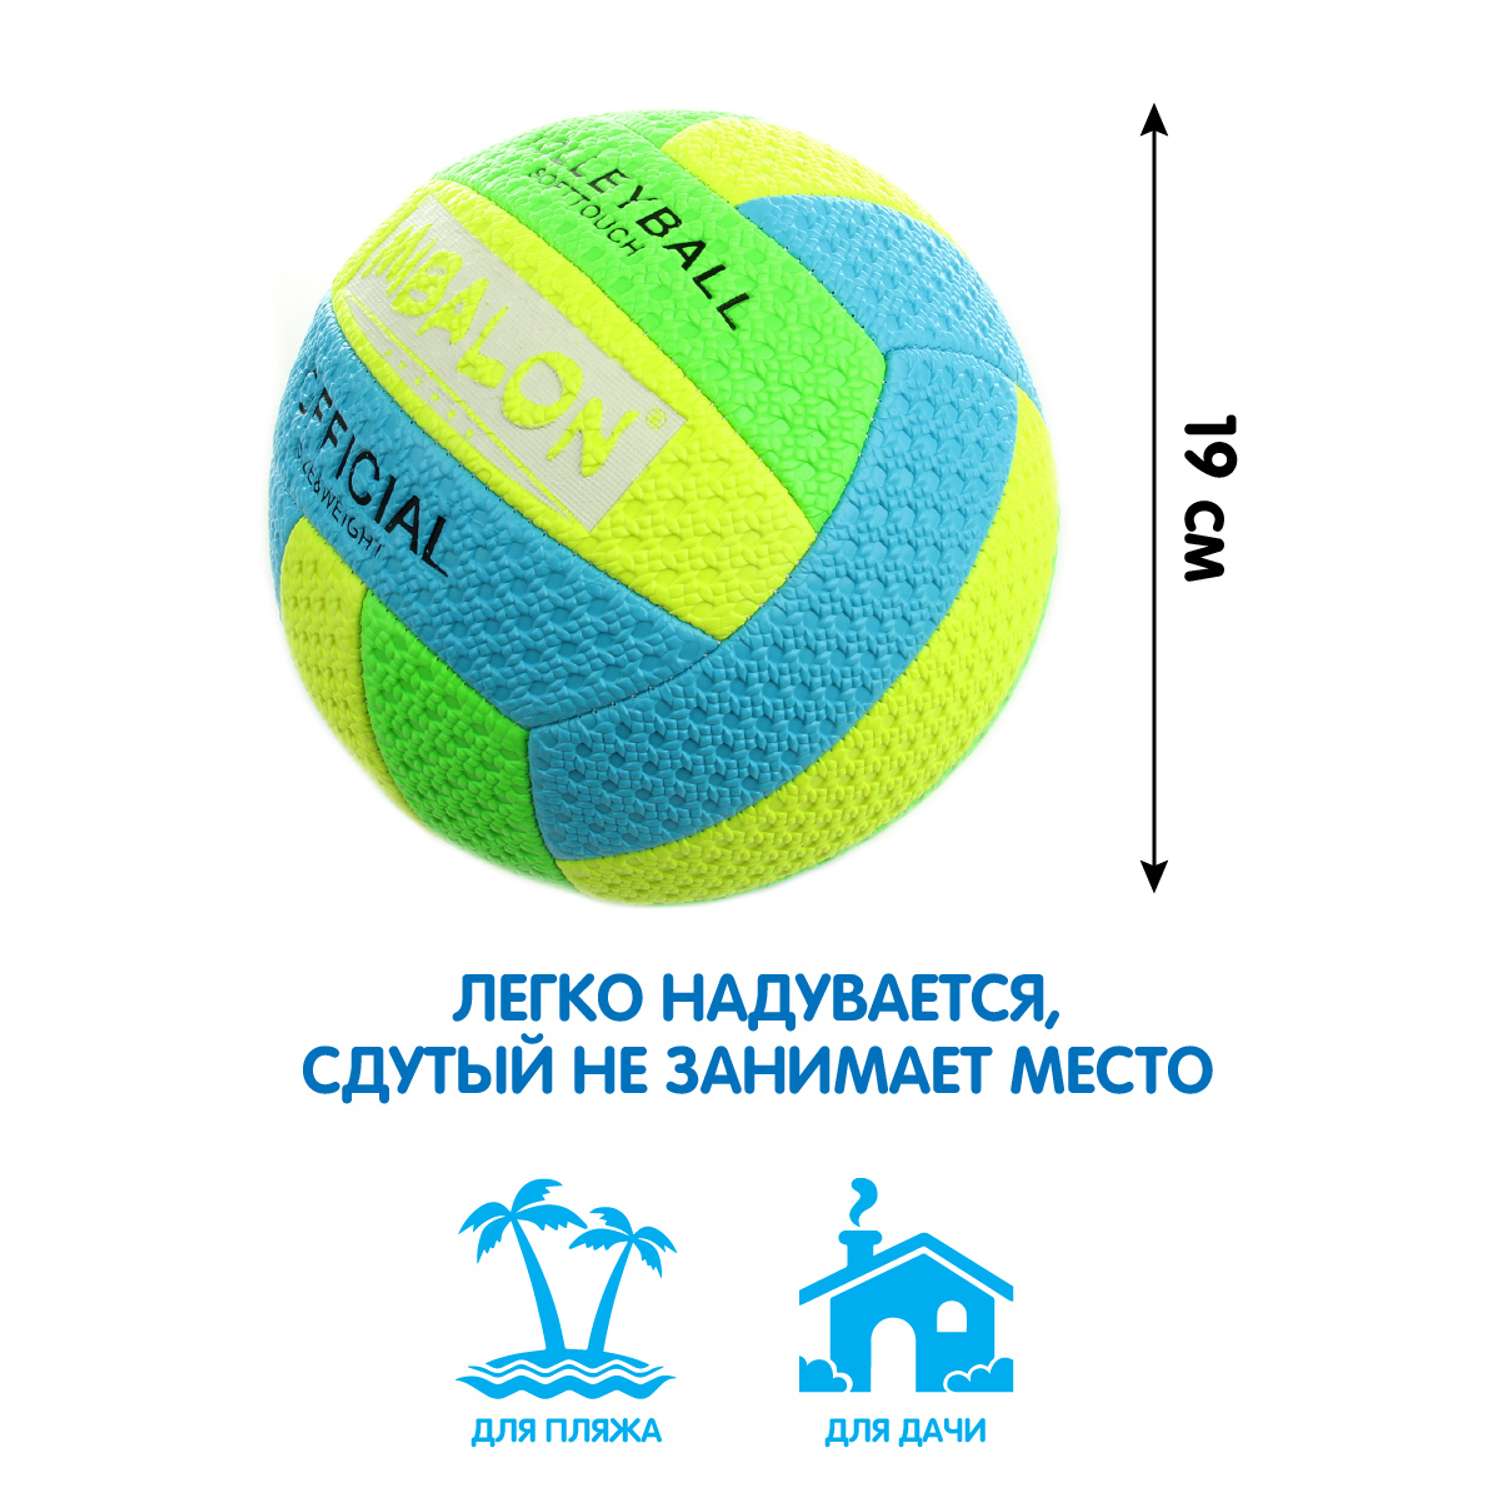 Мяч Veld Co волейбольный 19 см - фото 3